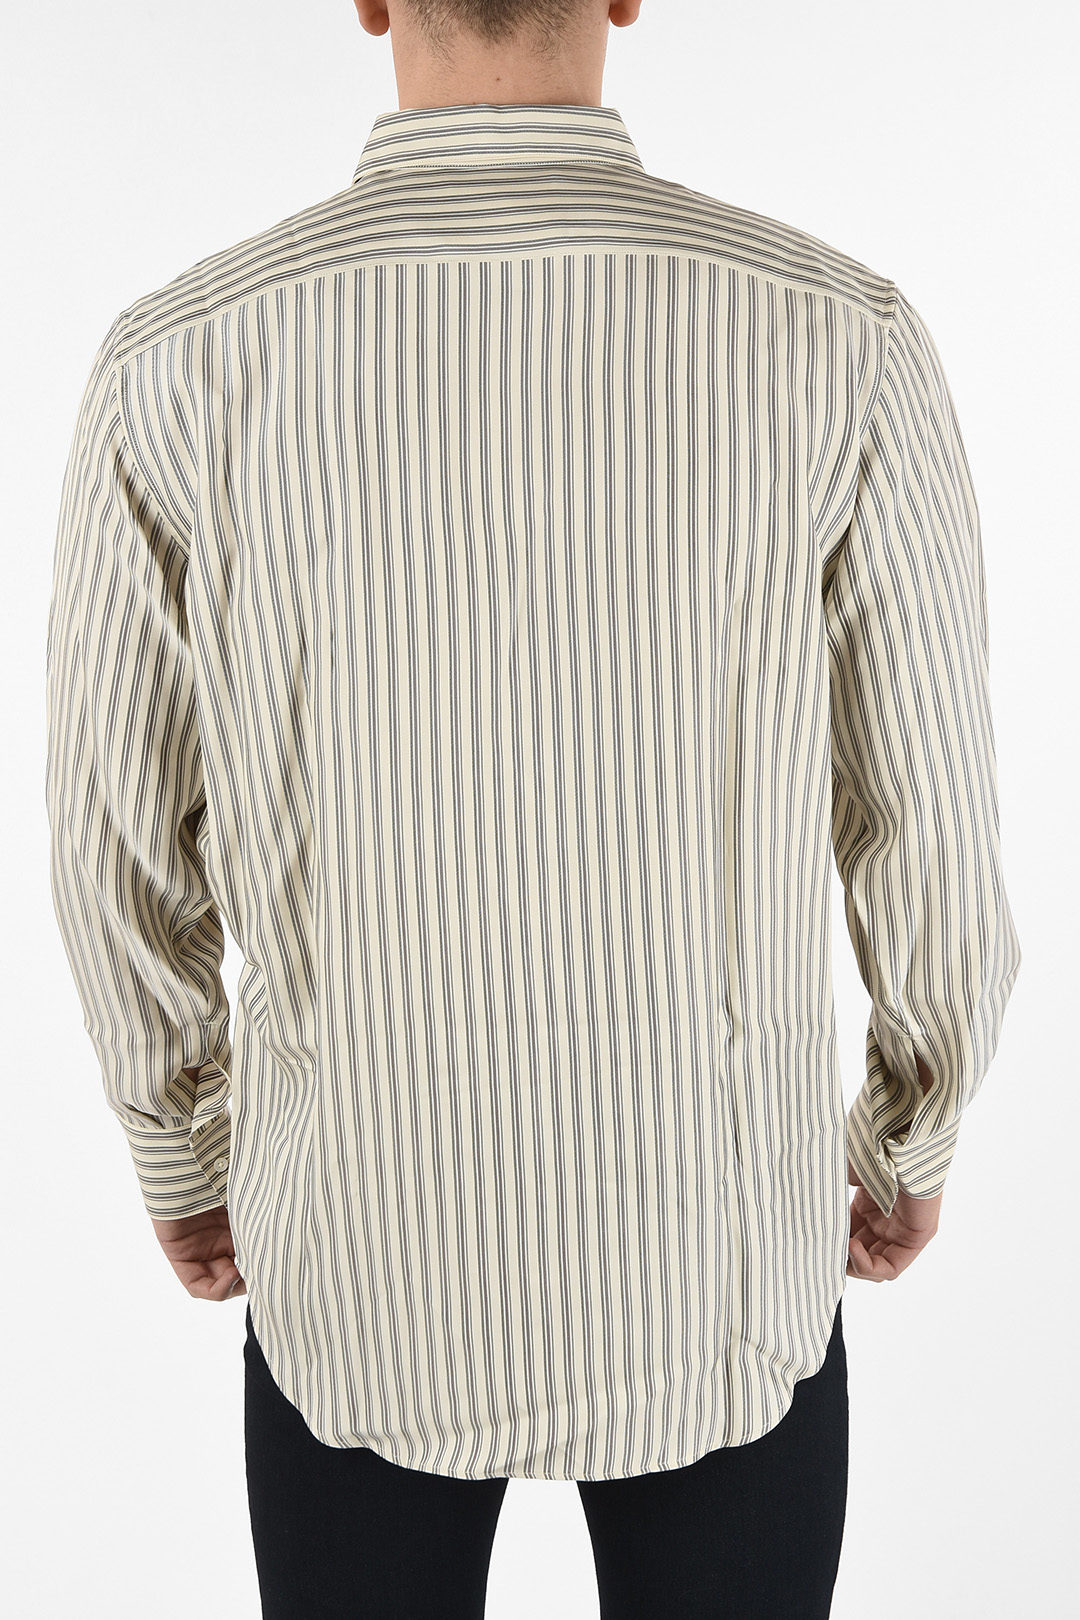 Jil Sander Oversized Printed Shirt men - Glamood Outlet